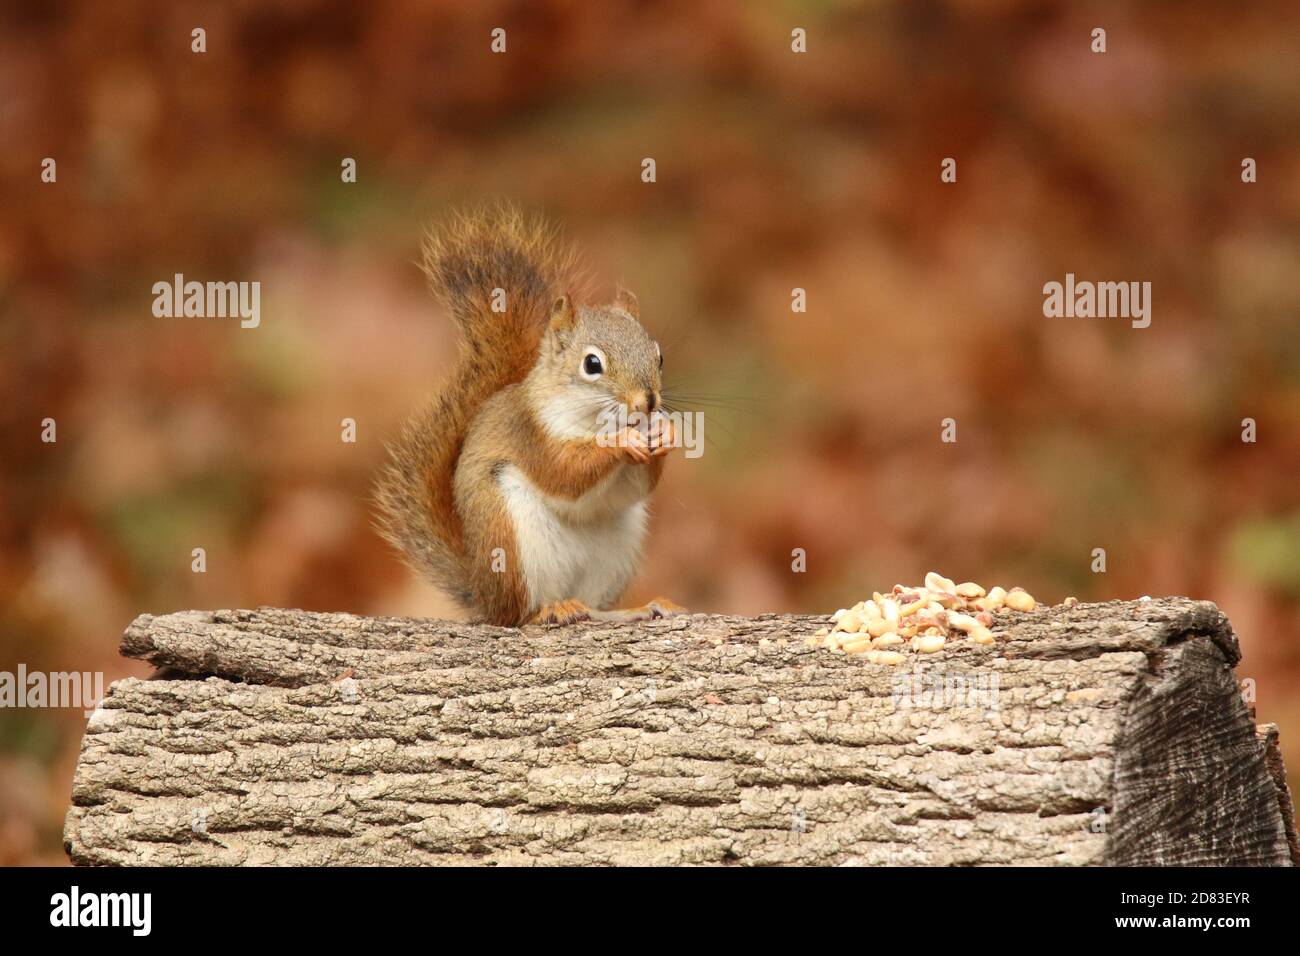 Petit écureuil rouge Tamiasciurus hudsonicus assis sur une connexion Tomber manger des noix Banque D'Images